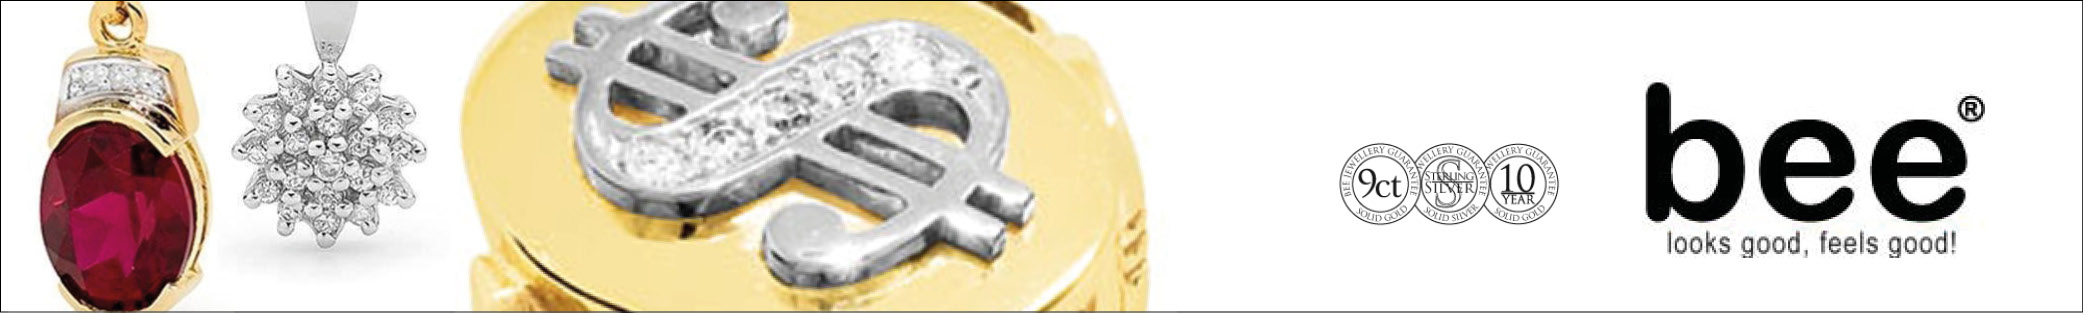 Internationella smycken med 10 års garanti från Australian Bee på Guldsmykket.dk